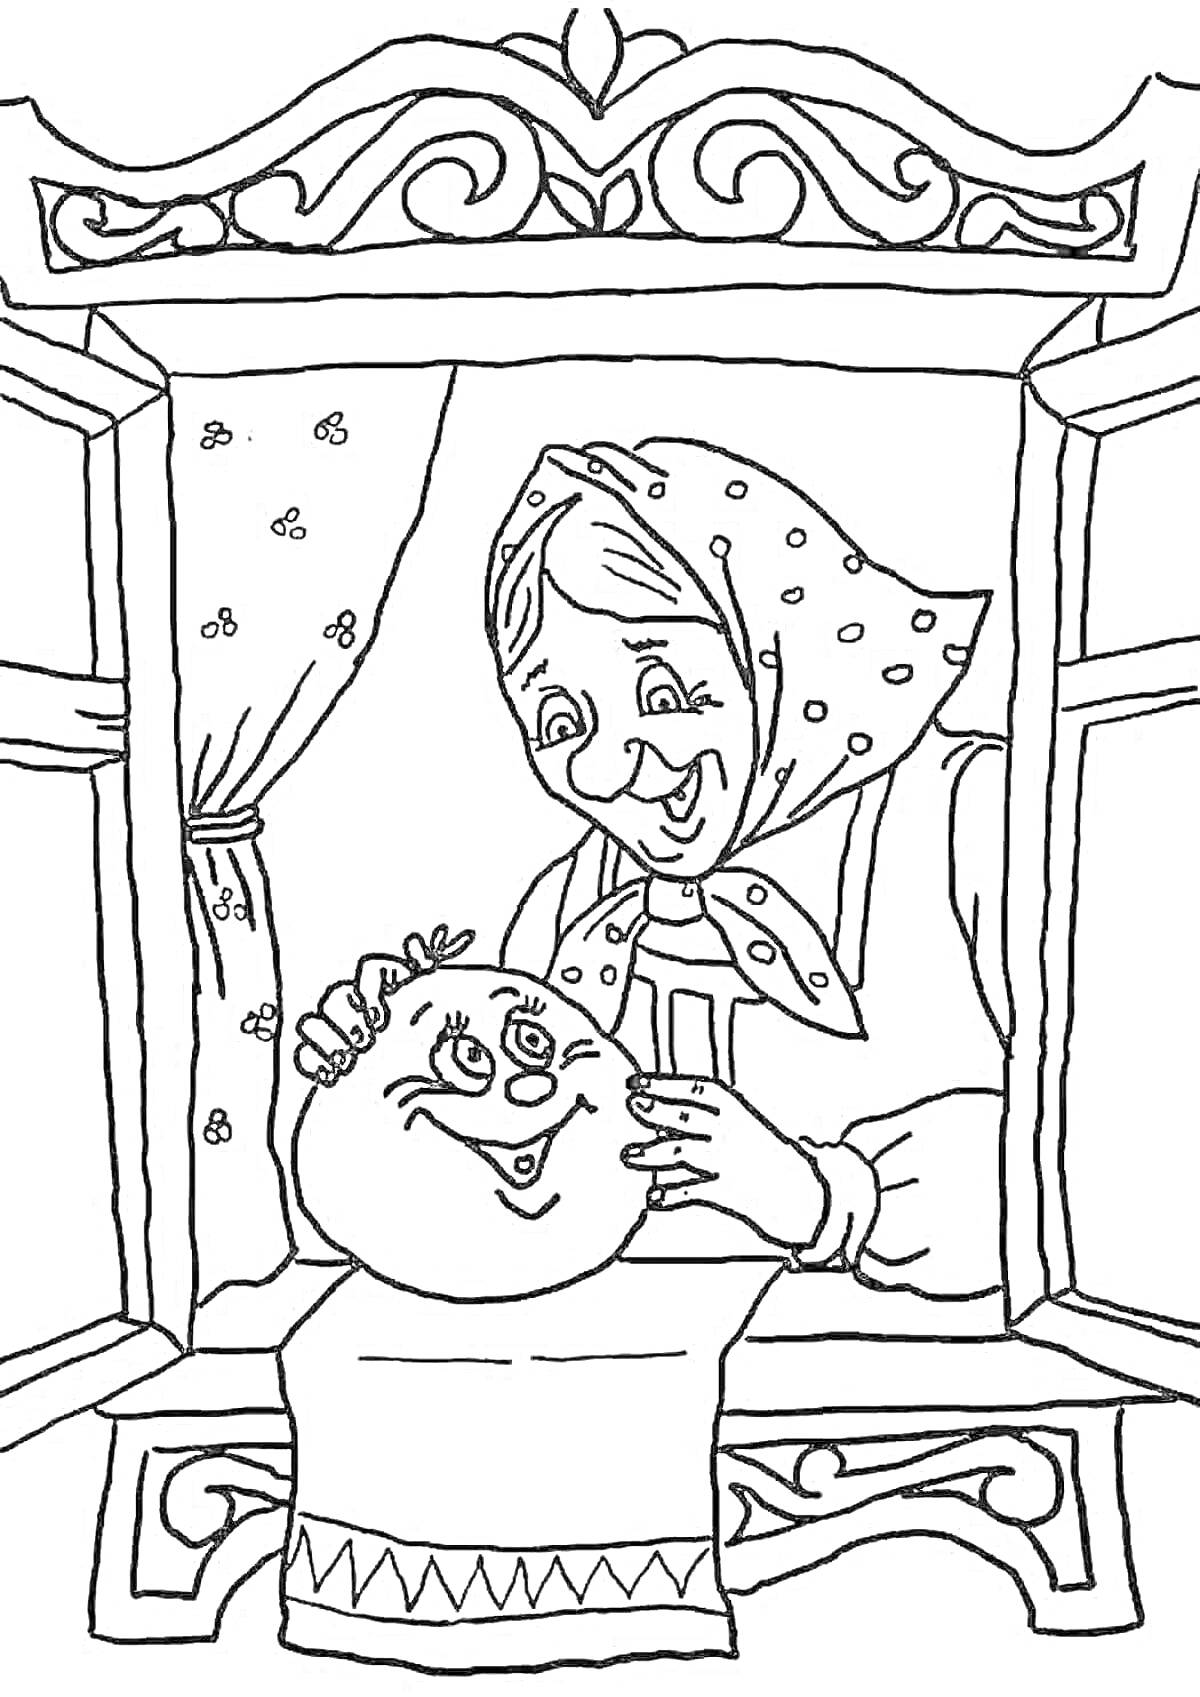 Раскраска Бабушка и колобок у окна